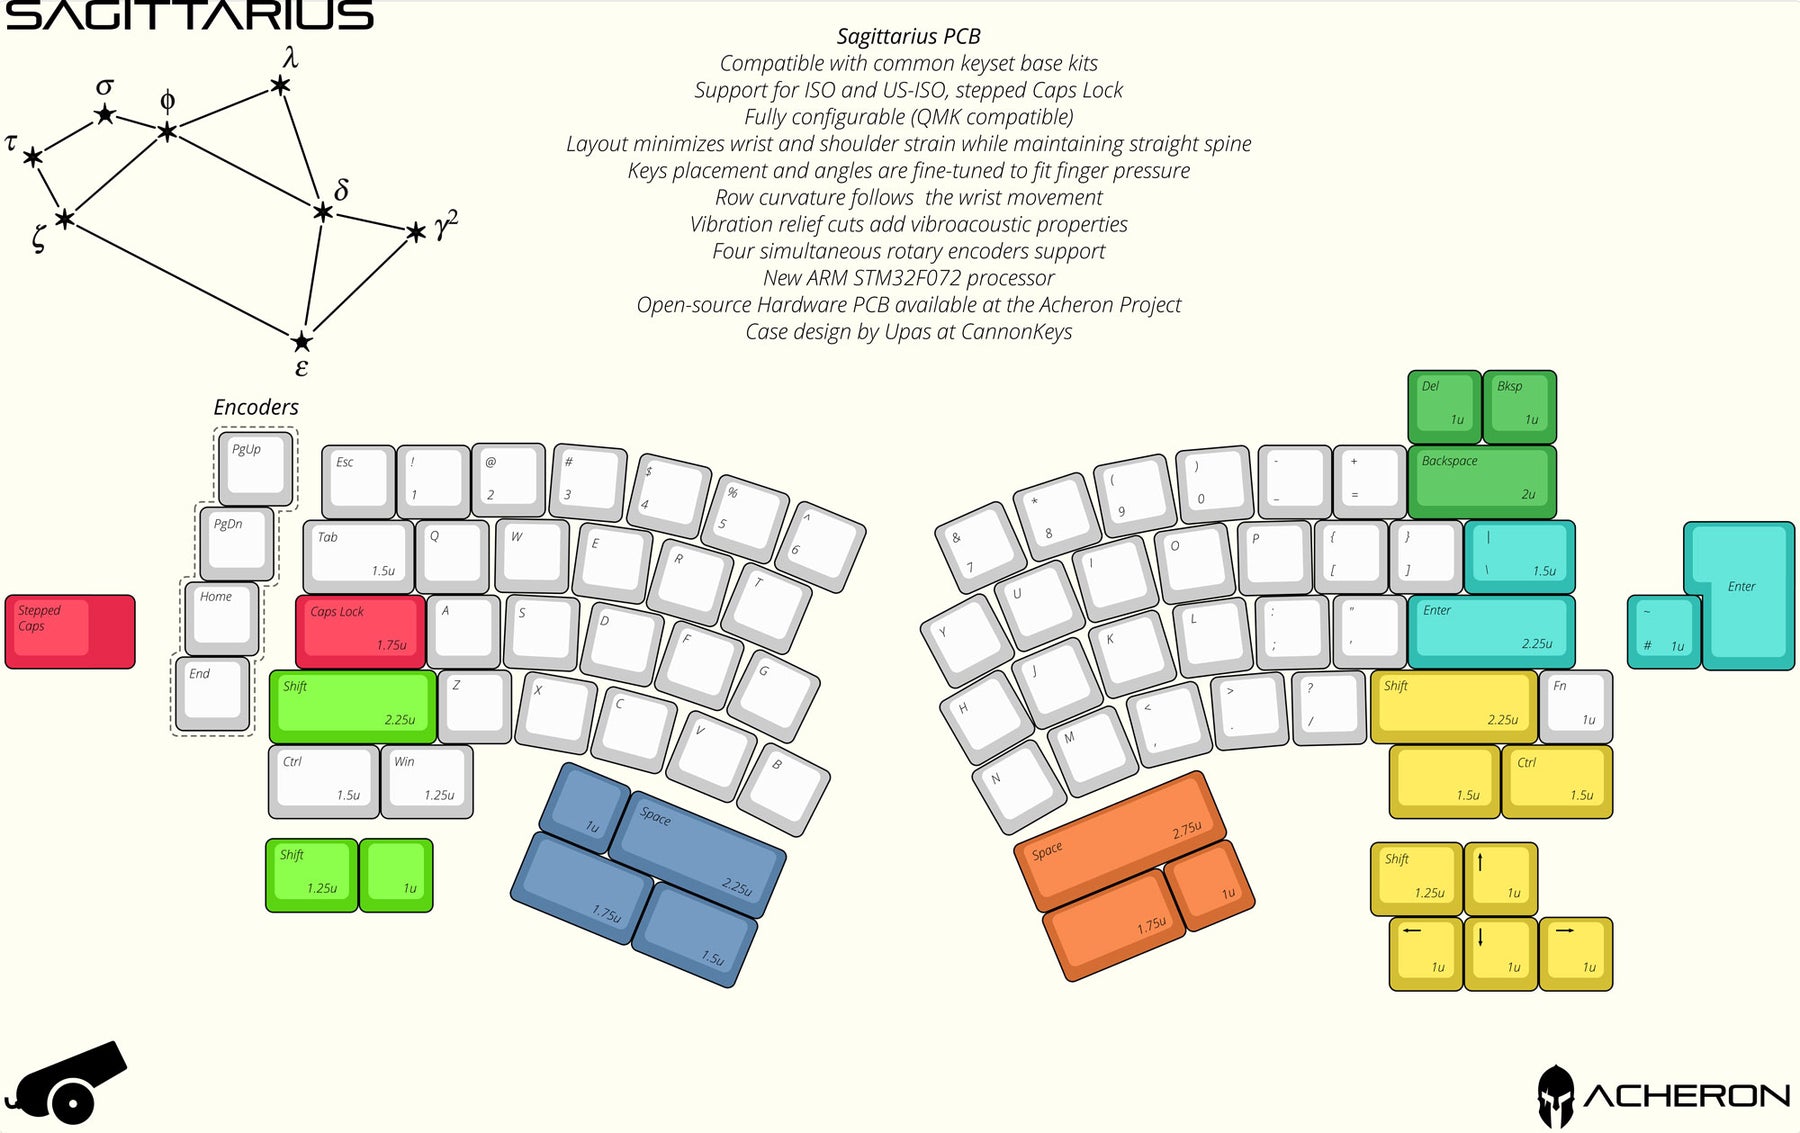 Sagittarius Keyboard Kit